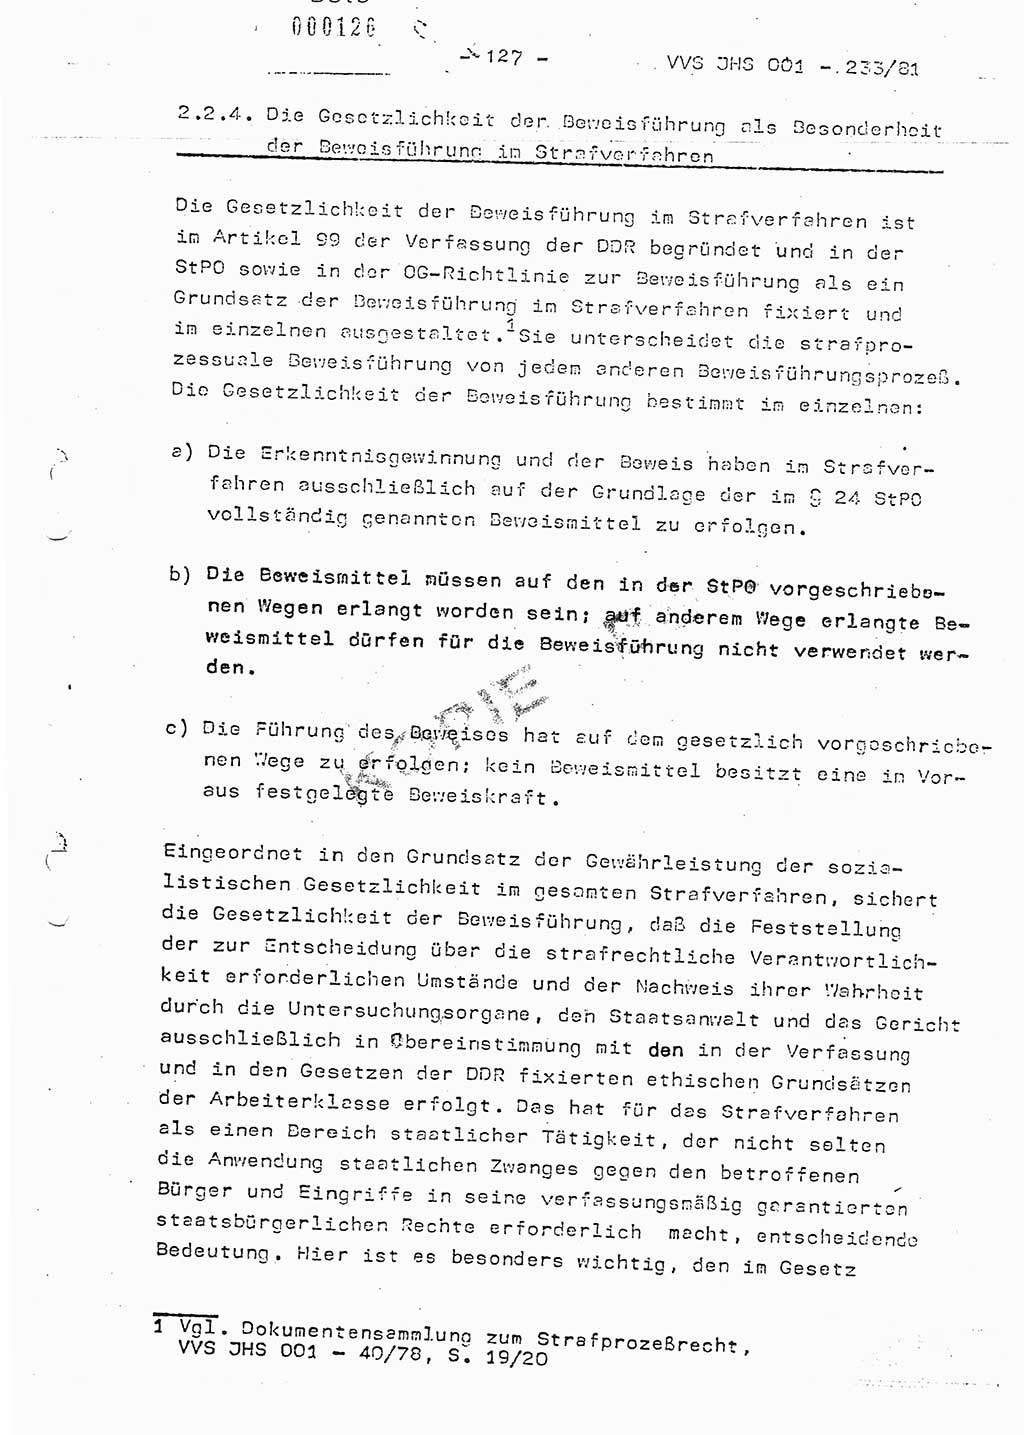 Dissertation Oberstleutnant Horst Zank (JHS), Oberstleutnant Dr. Karl-Heinz Knoblauch (JHS), Oberstleutnant Gustav-Adolf Kowalewski (HA Ⅸ), Oberstleutnant Wolfgang Plötner (HA Ⅸ), Ministerium für Staatssicherheit (MfS) [Deutsche Demokratische Republik (DDR)], Juristische Hochschule (JHS), Vertrauliche Verschlußsache (VVS) o001-233/81, Potsdam 1981, Blatt 127 (Diss. MfS DDR JHS VVS o001-233/81 1981, Bl. 127)